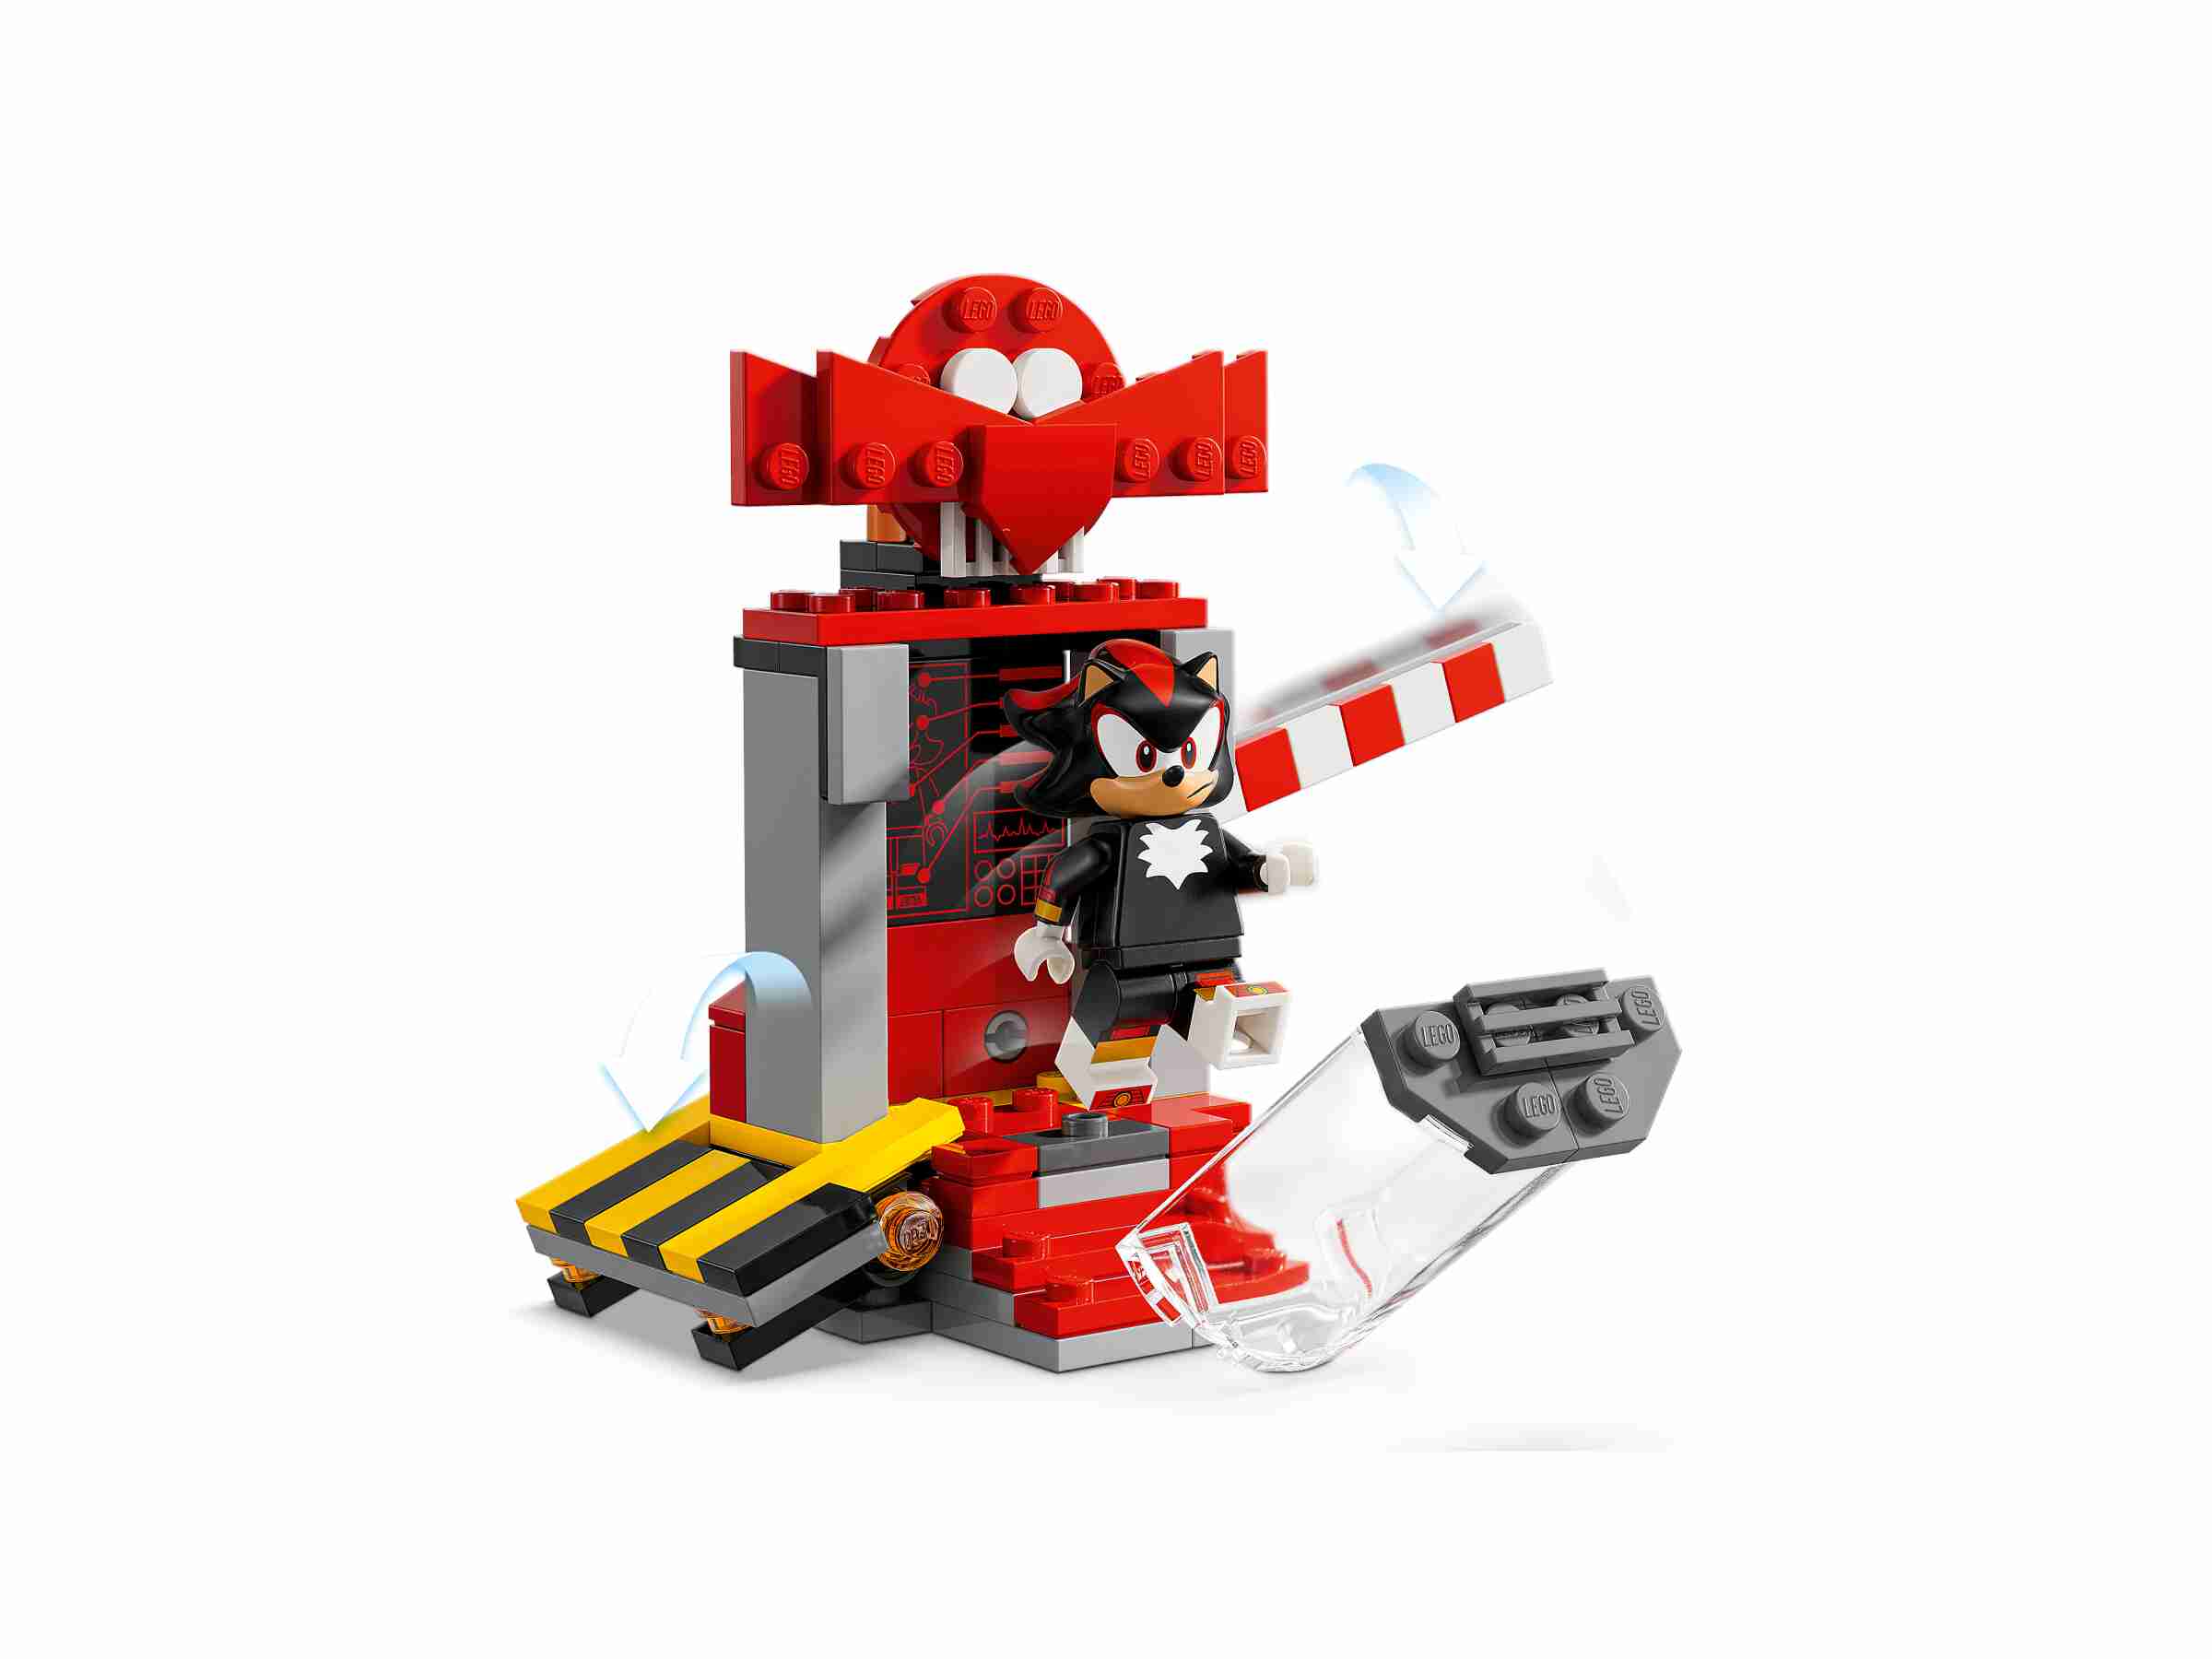 LEGO 76995 Sonic Shadow The Hedgehog Flucht, Motorrad, Labormodul, 